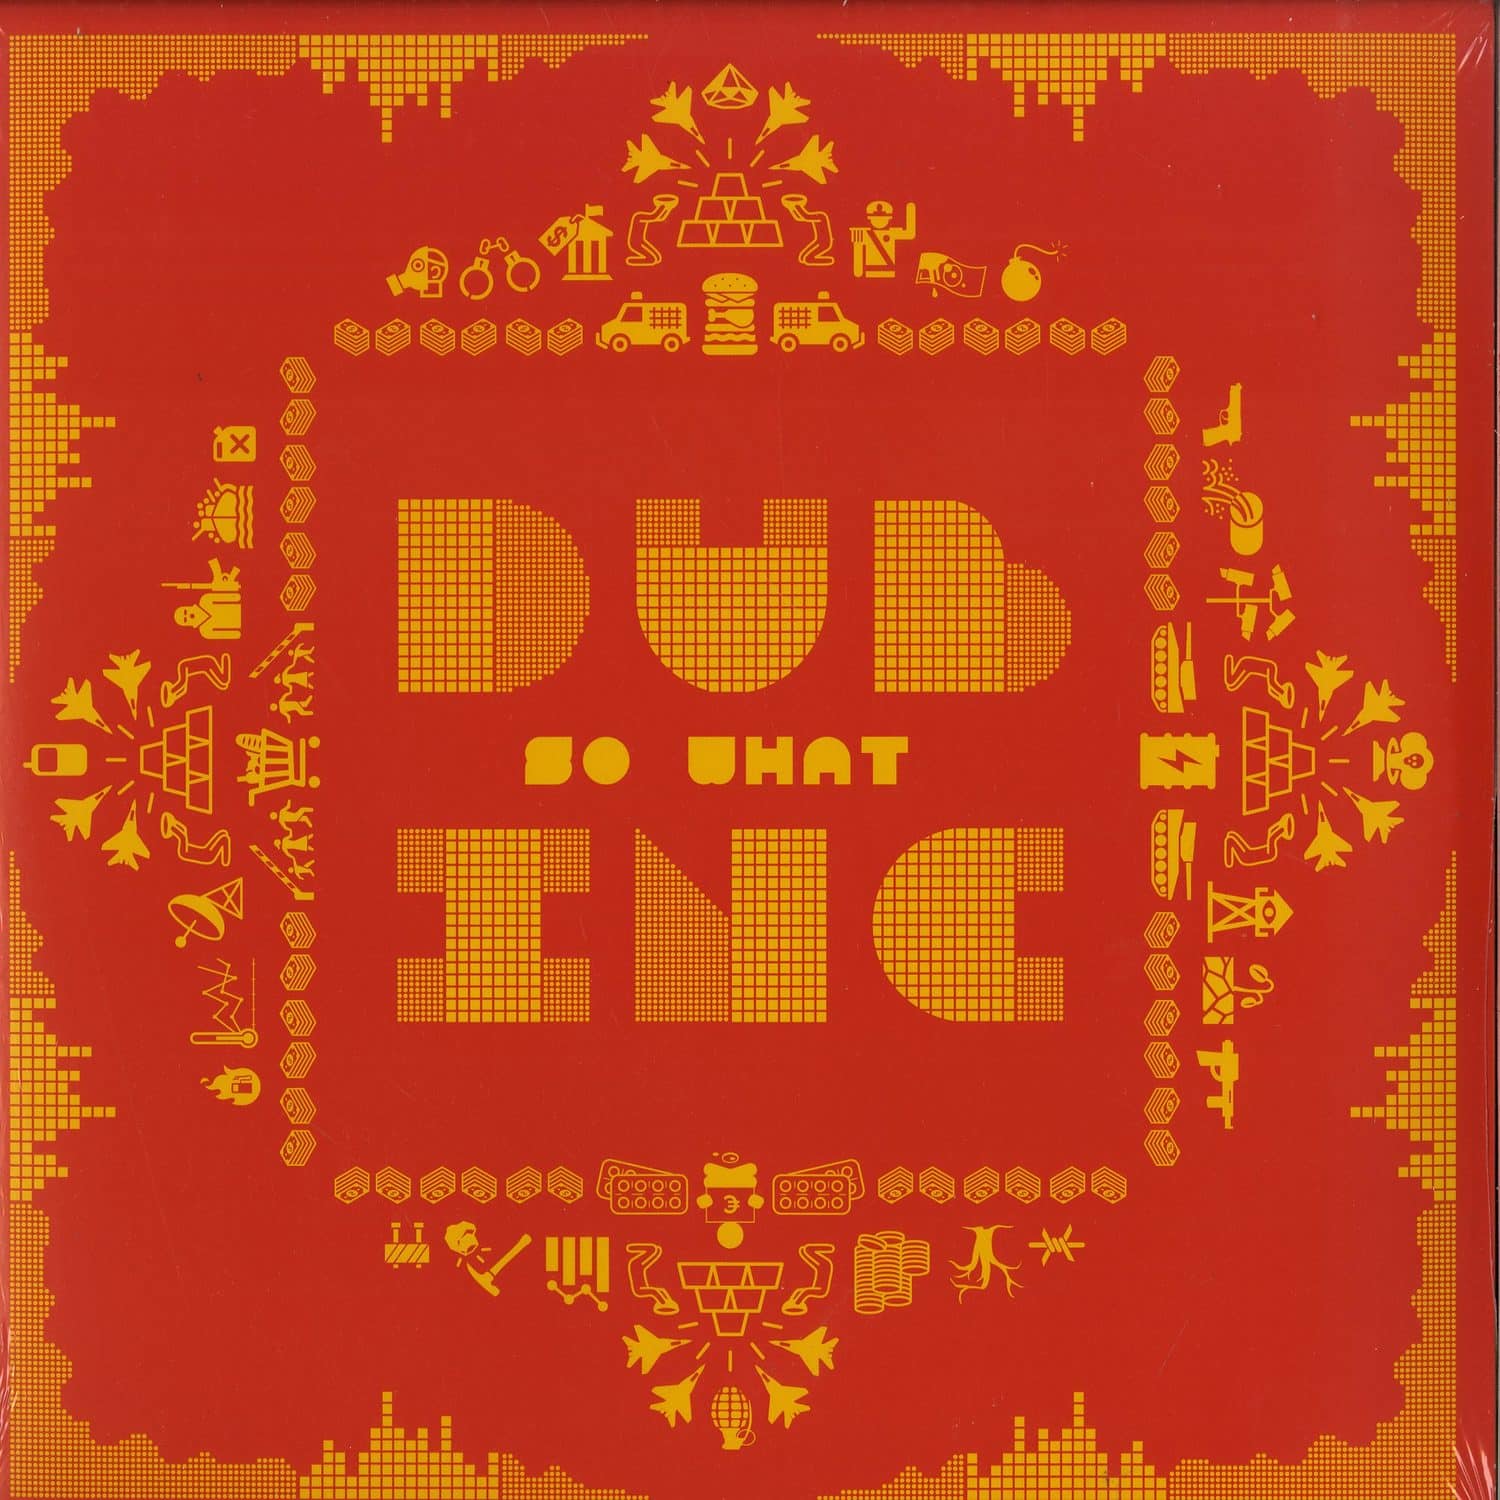 Dub Inc. - SO WHAT 